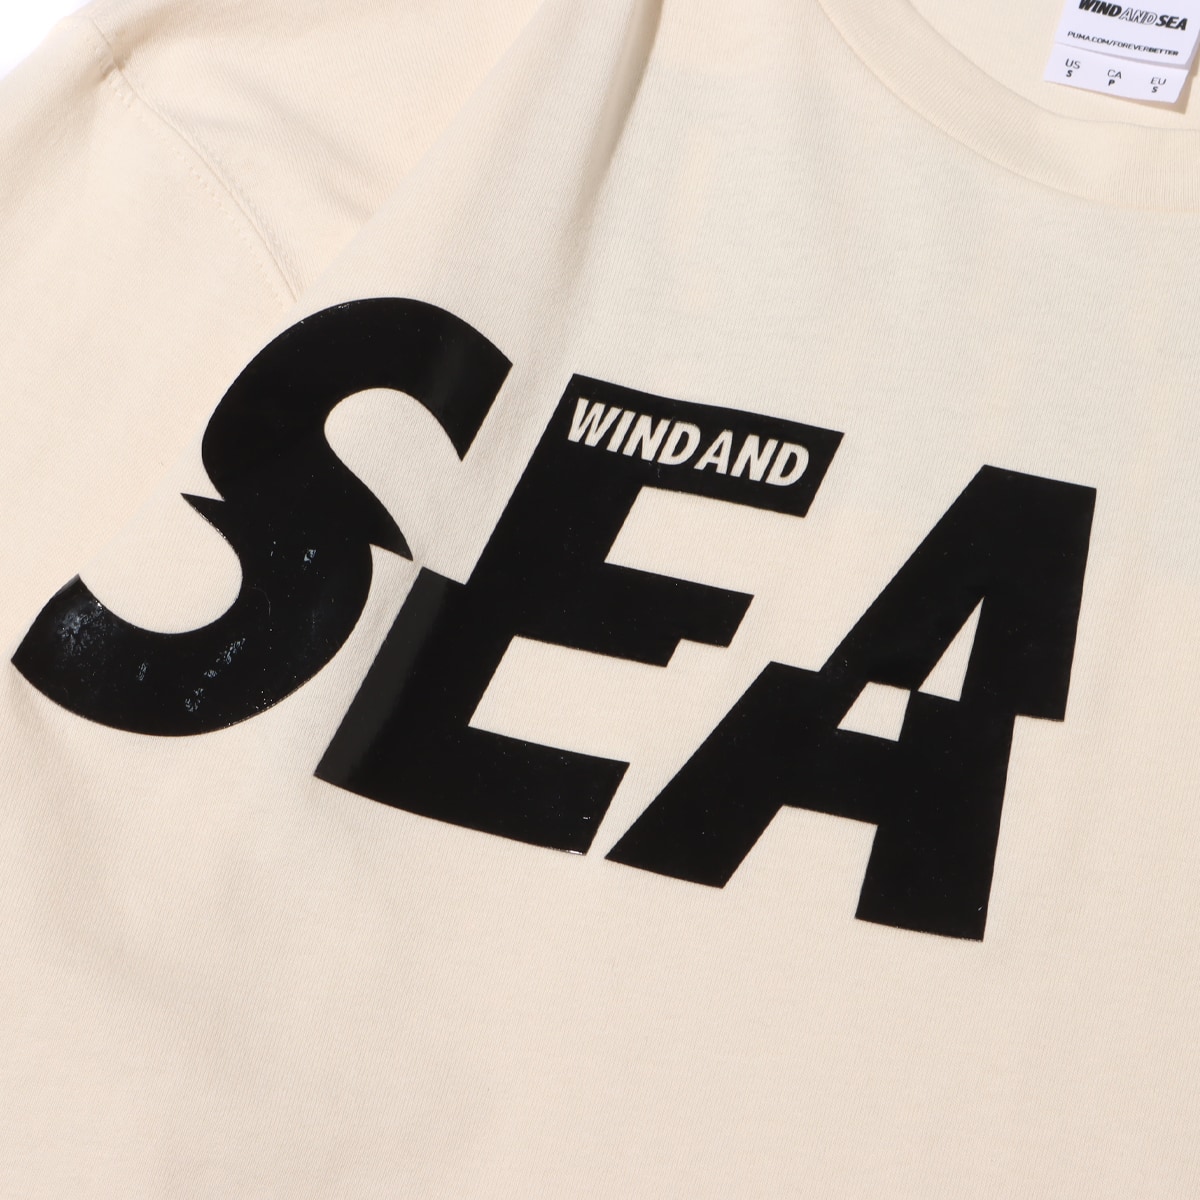 Lサイズ　WIND AND SEA × PUMA コラボTシャツ